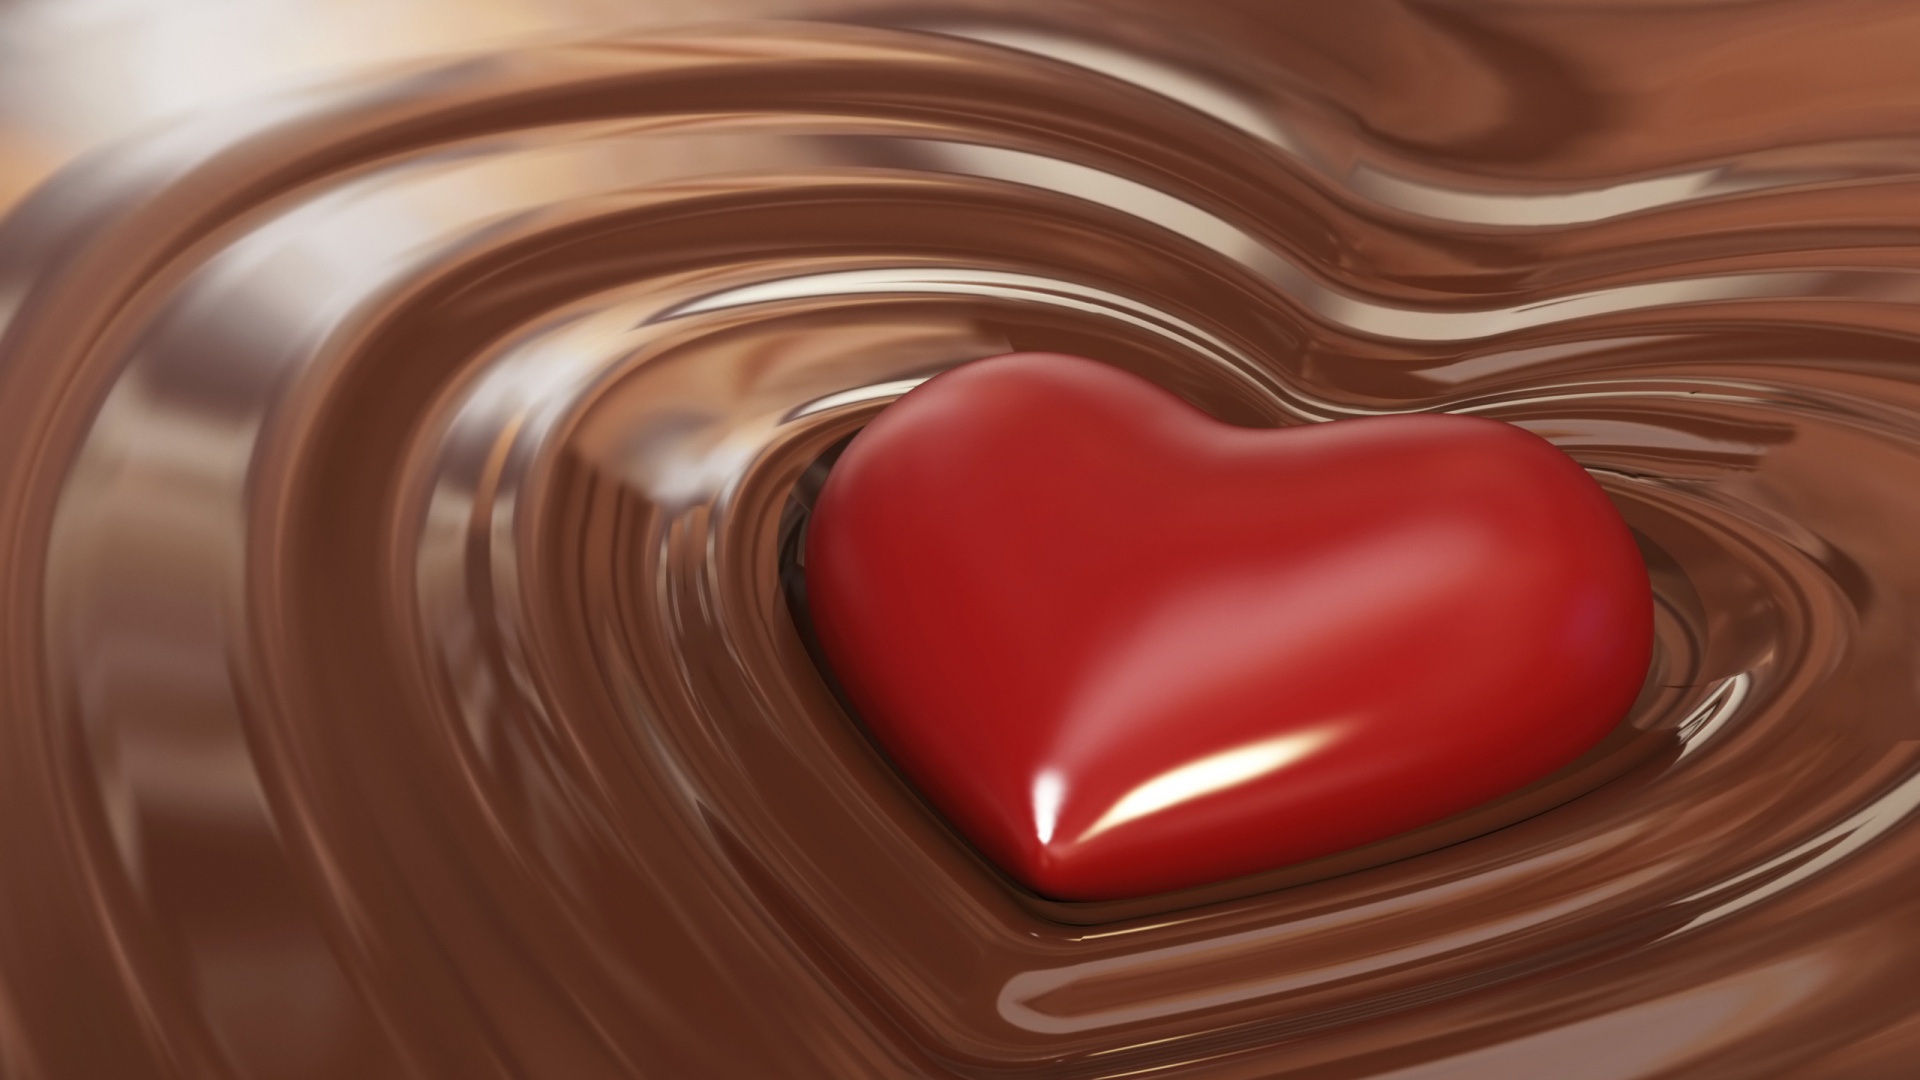 Chocolate Heart HD Wallpaper of Love   hdwallpaper2013com